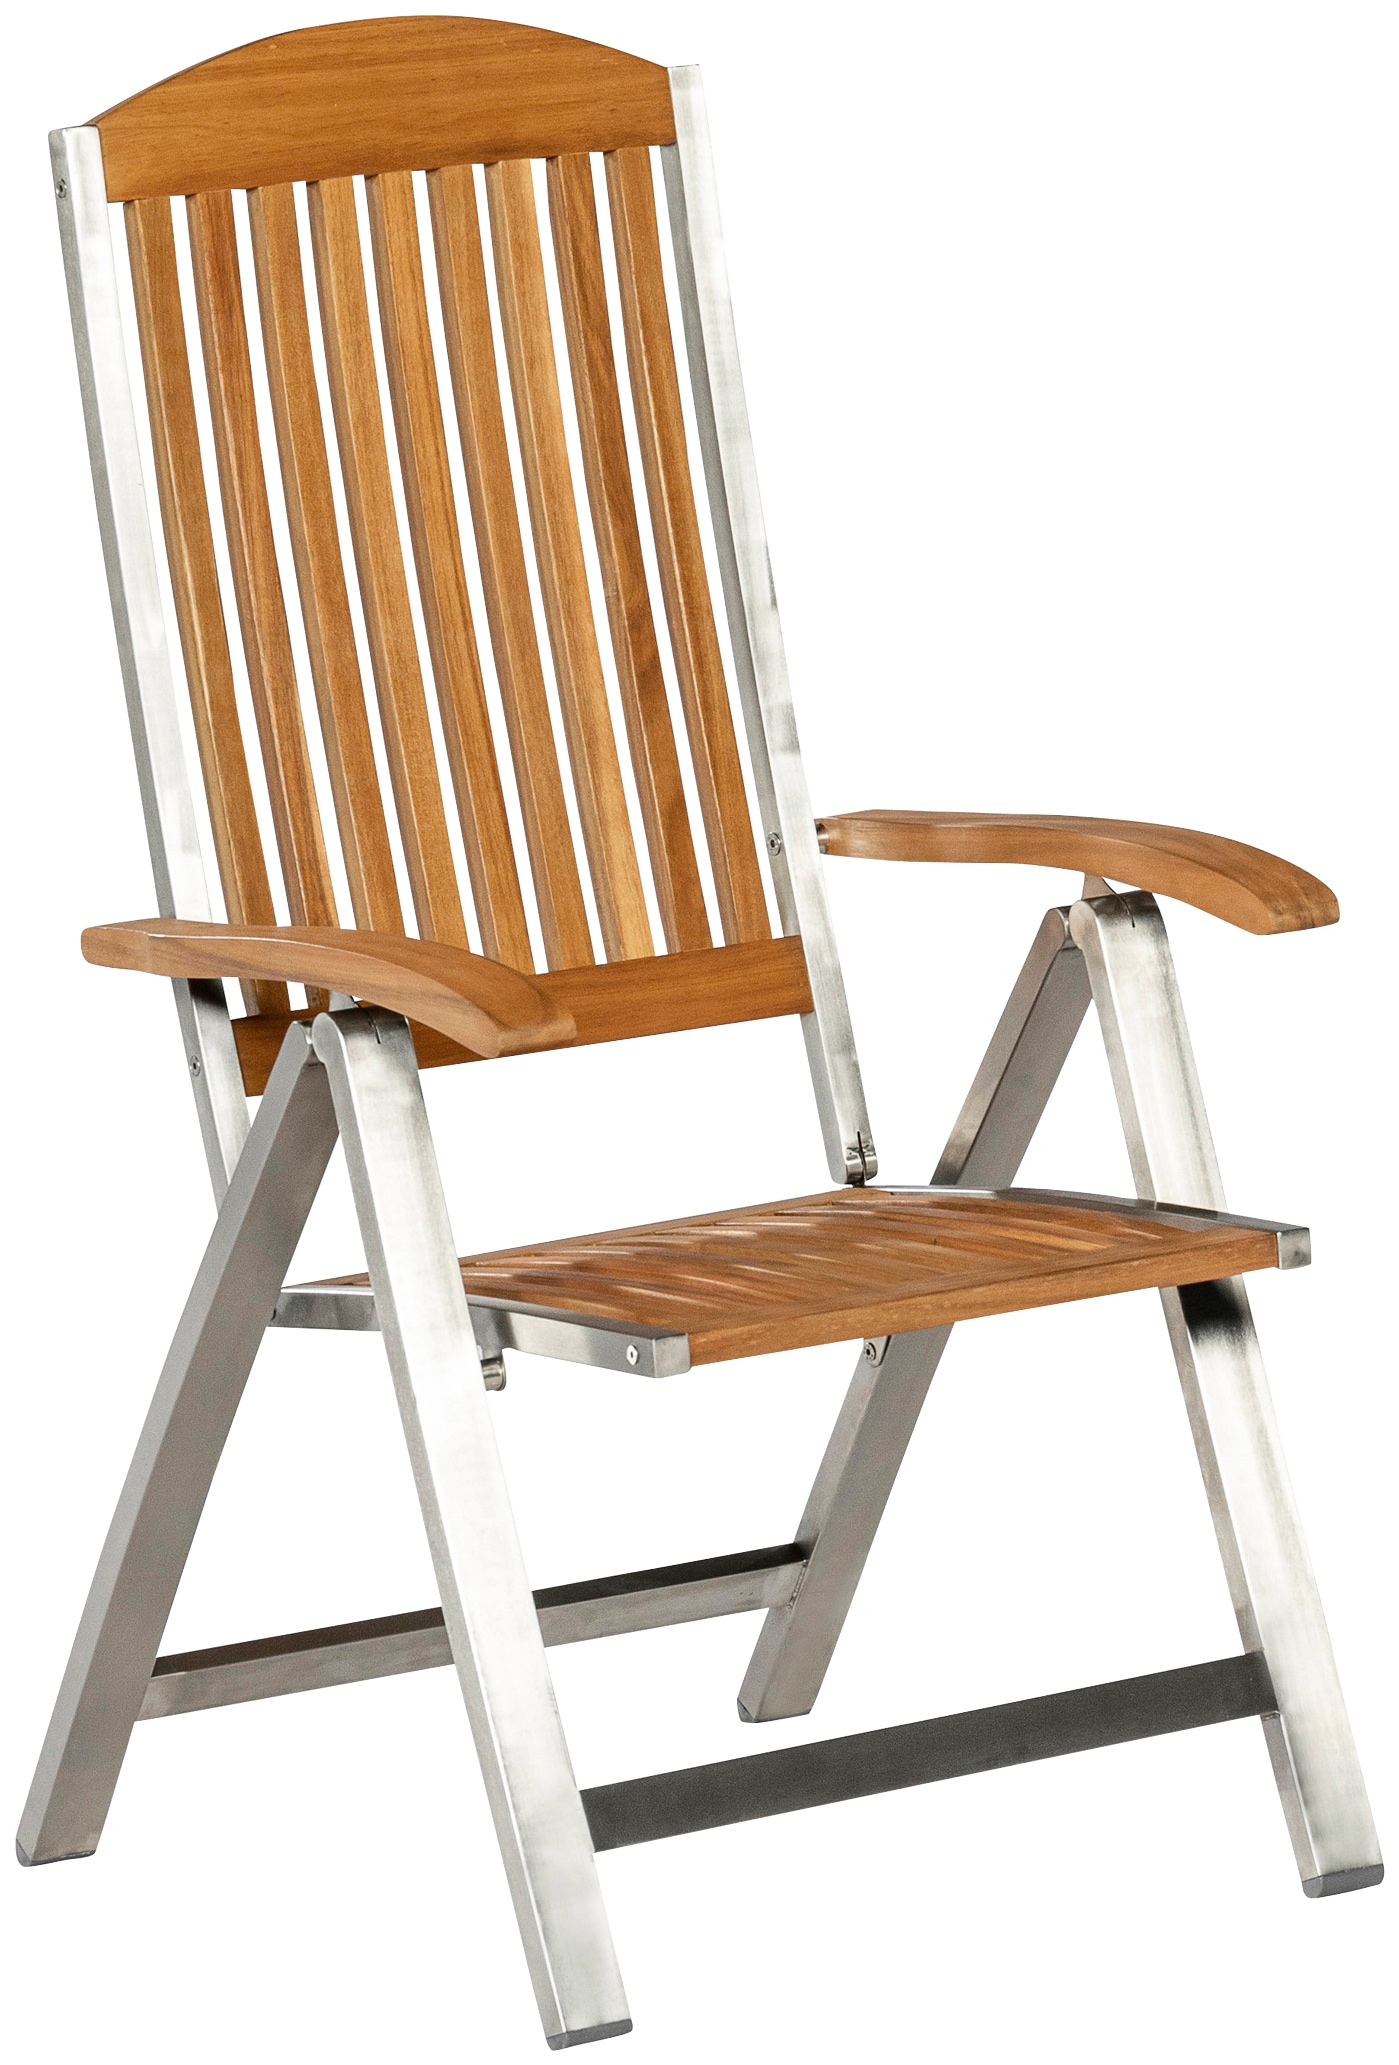 MERXX Poilsio kėdė »Keros« 1 St. Edelstahl/A...